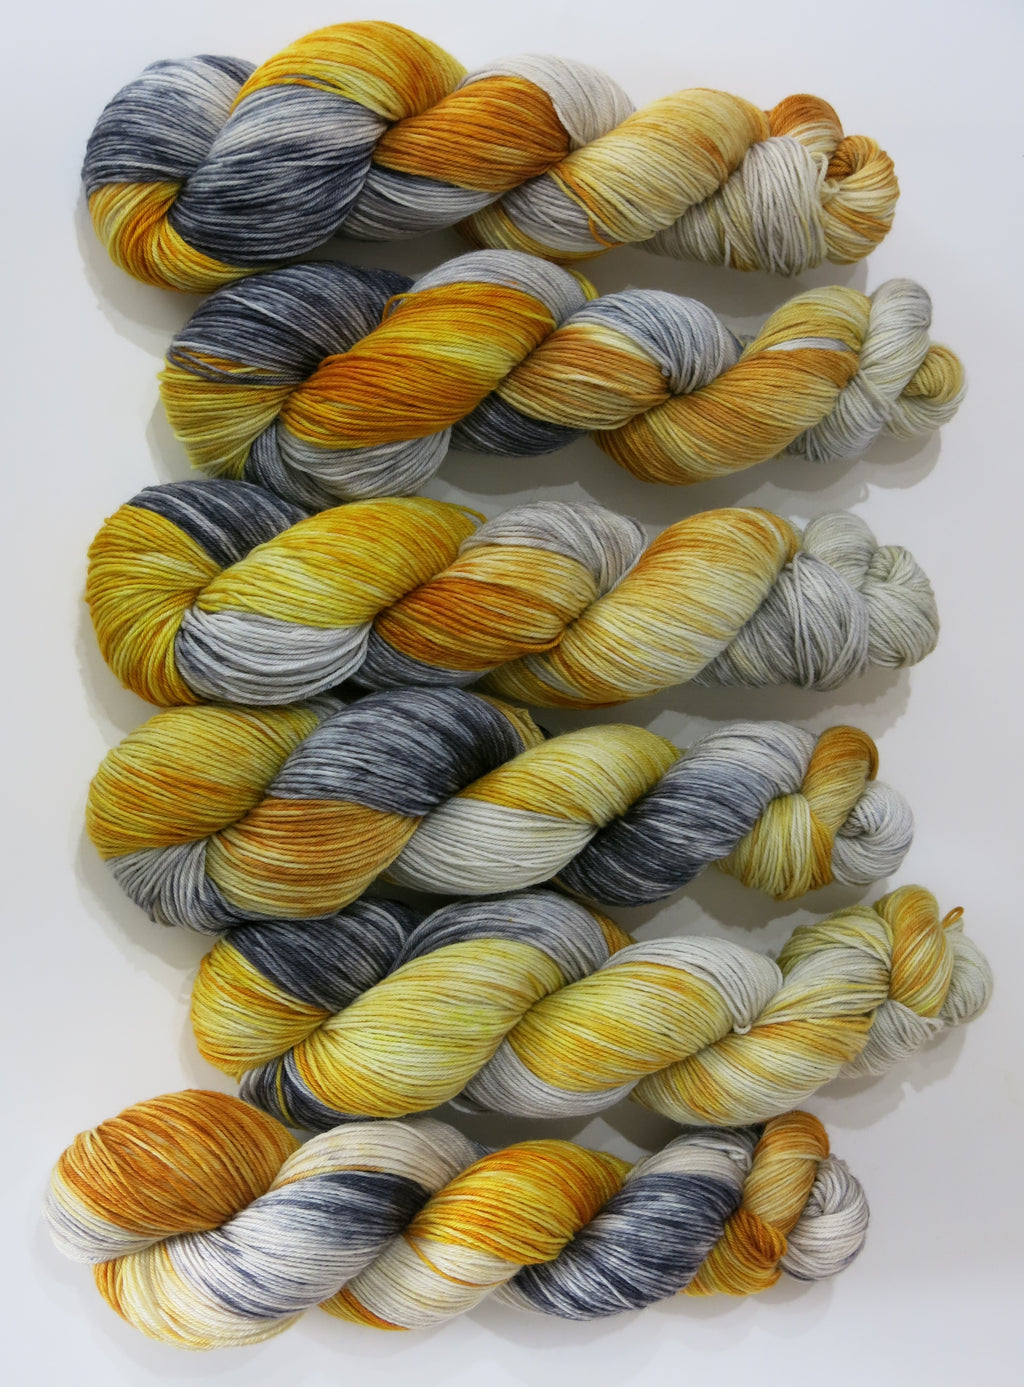 indie dyed superwash sock yarn skeins in golds and greys